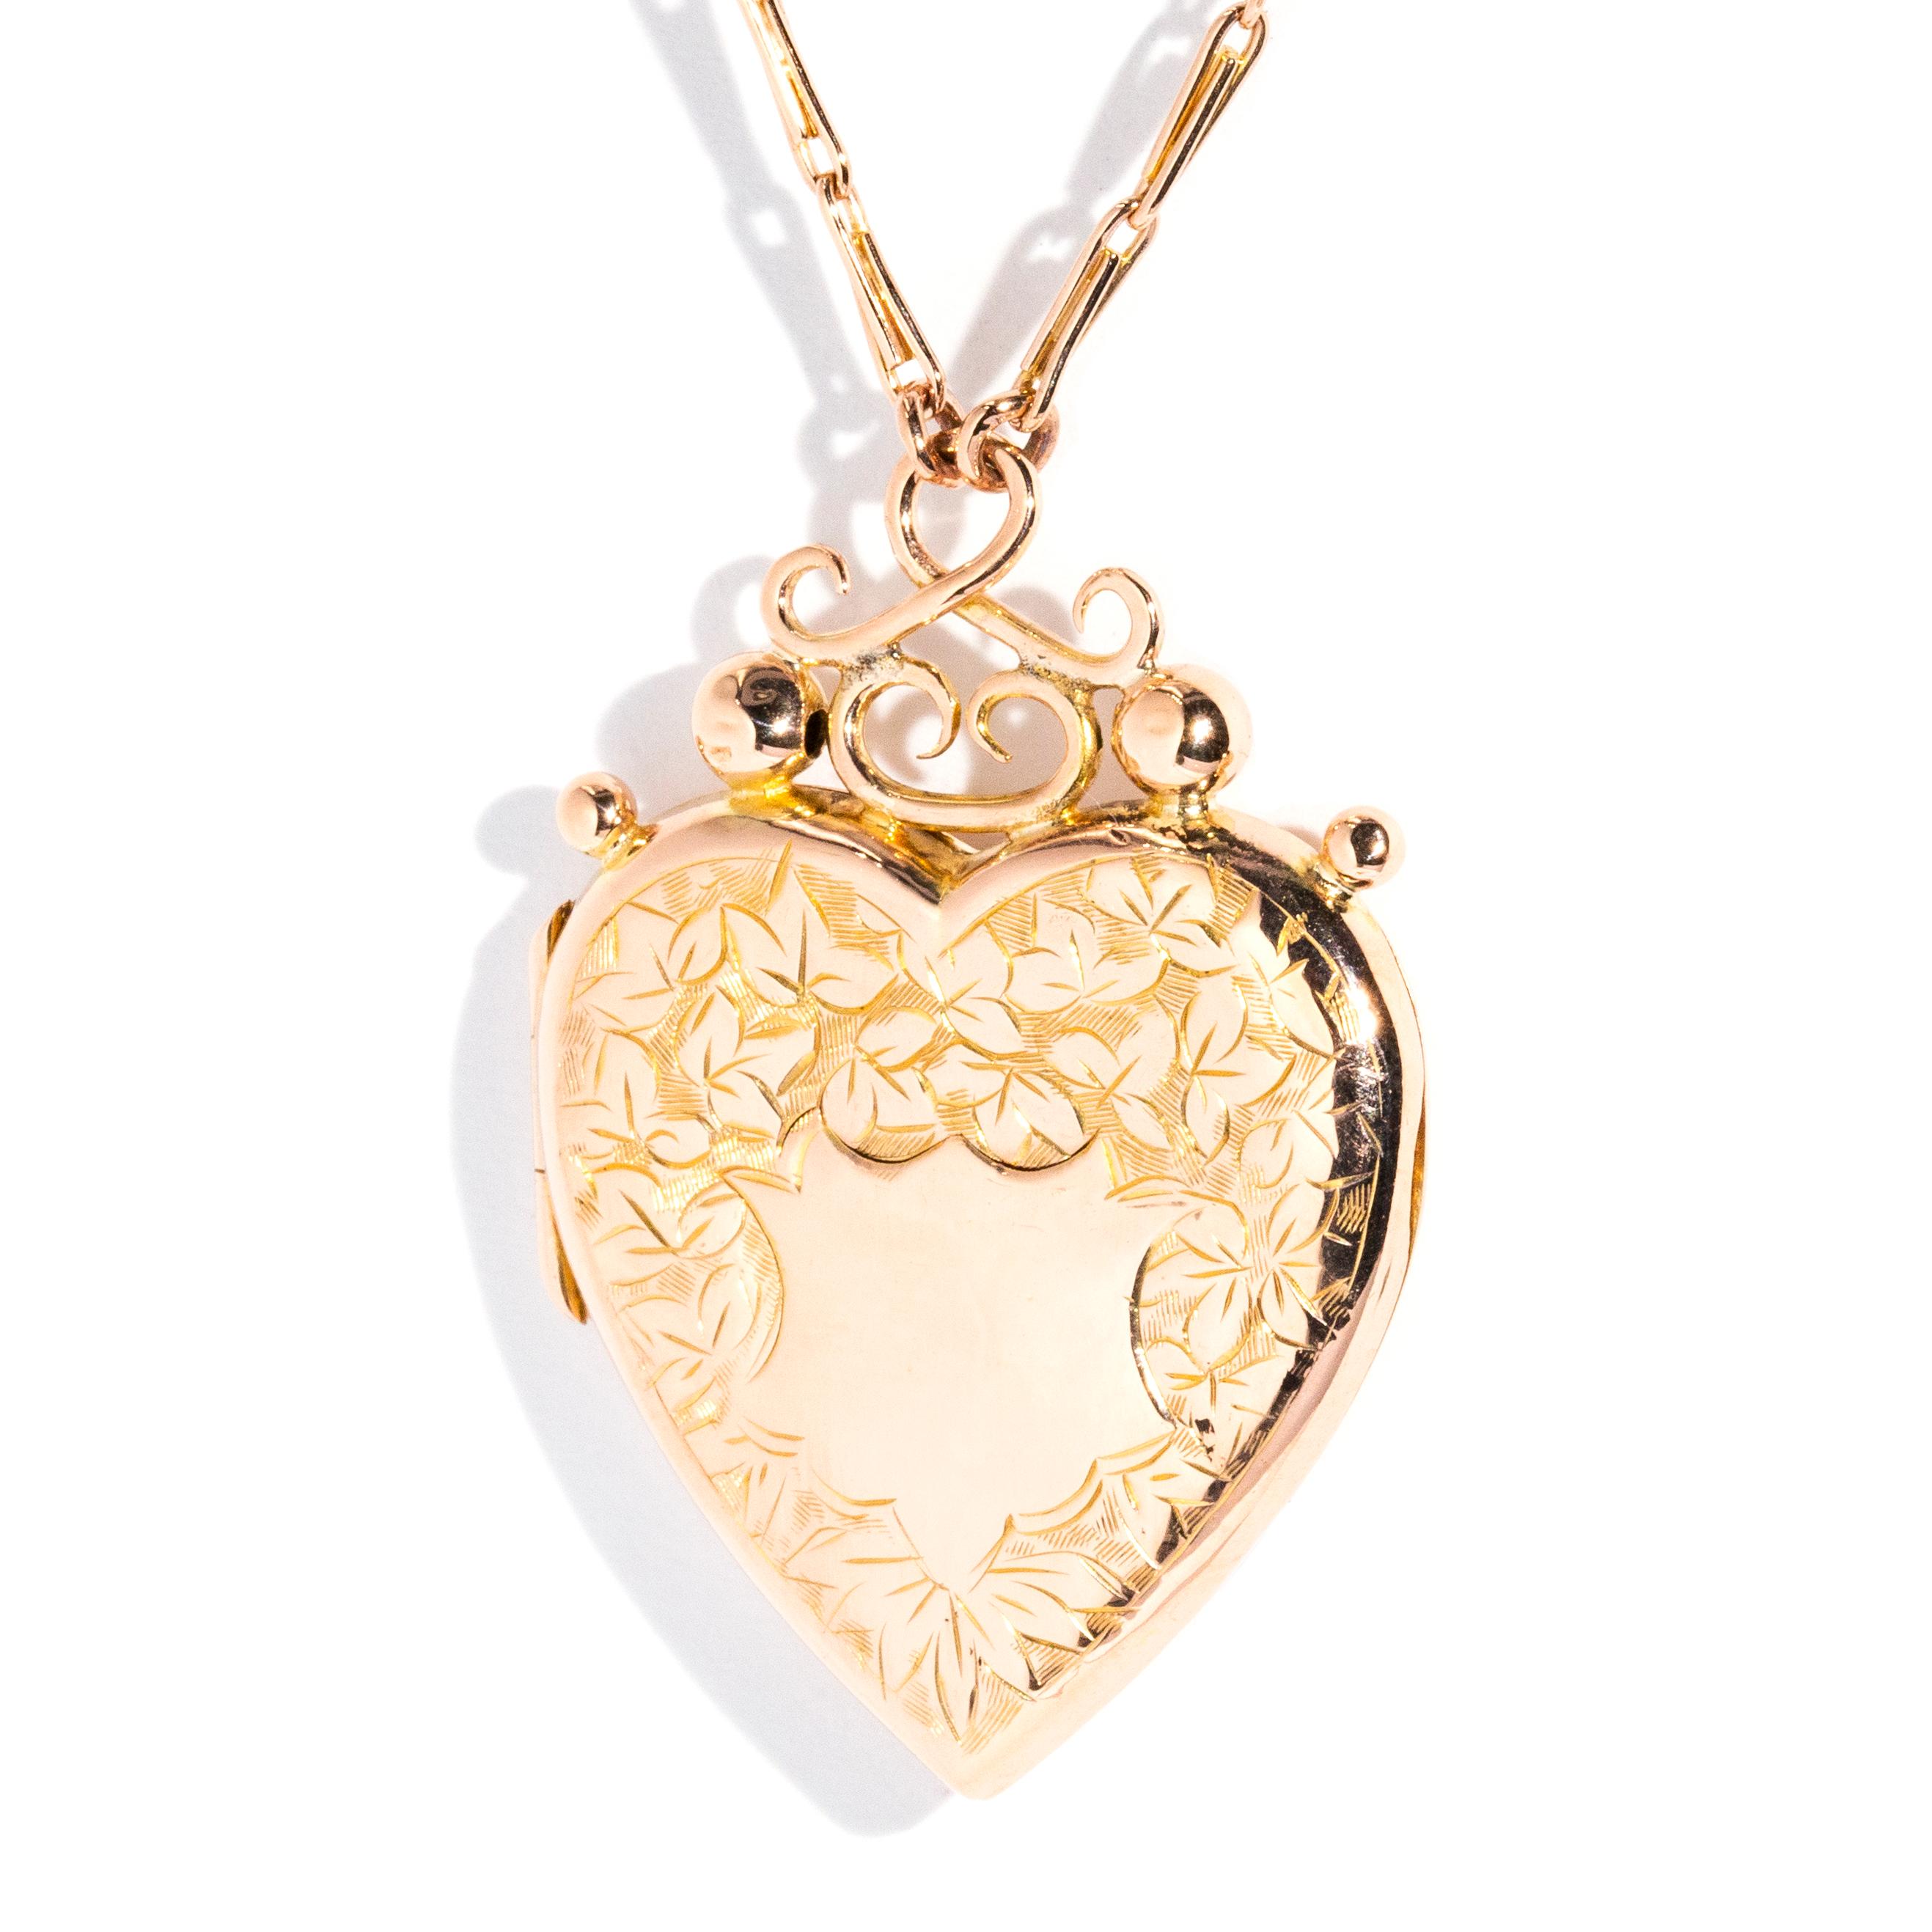 Modern Antique Edwardian Era Patterned & Hallmarked Heart Locket & Chain 9 Carat Gold